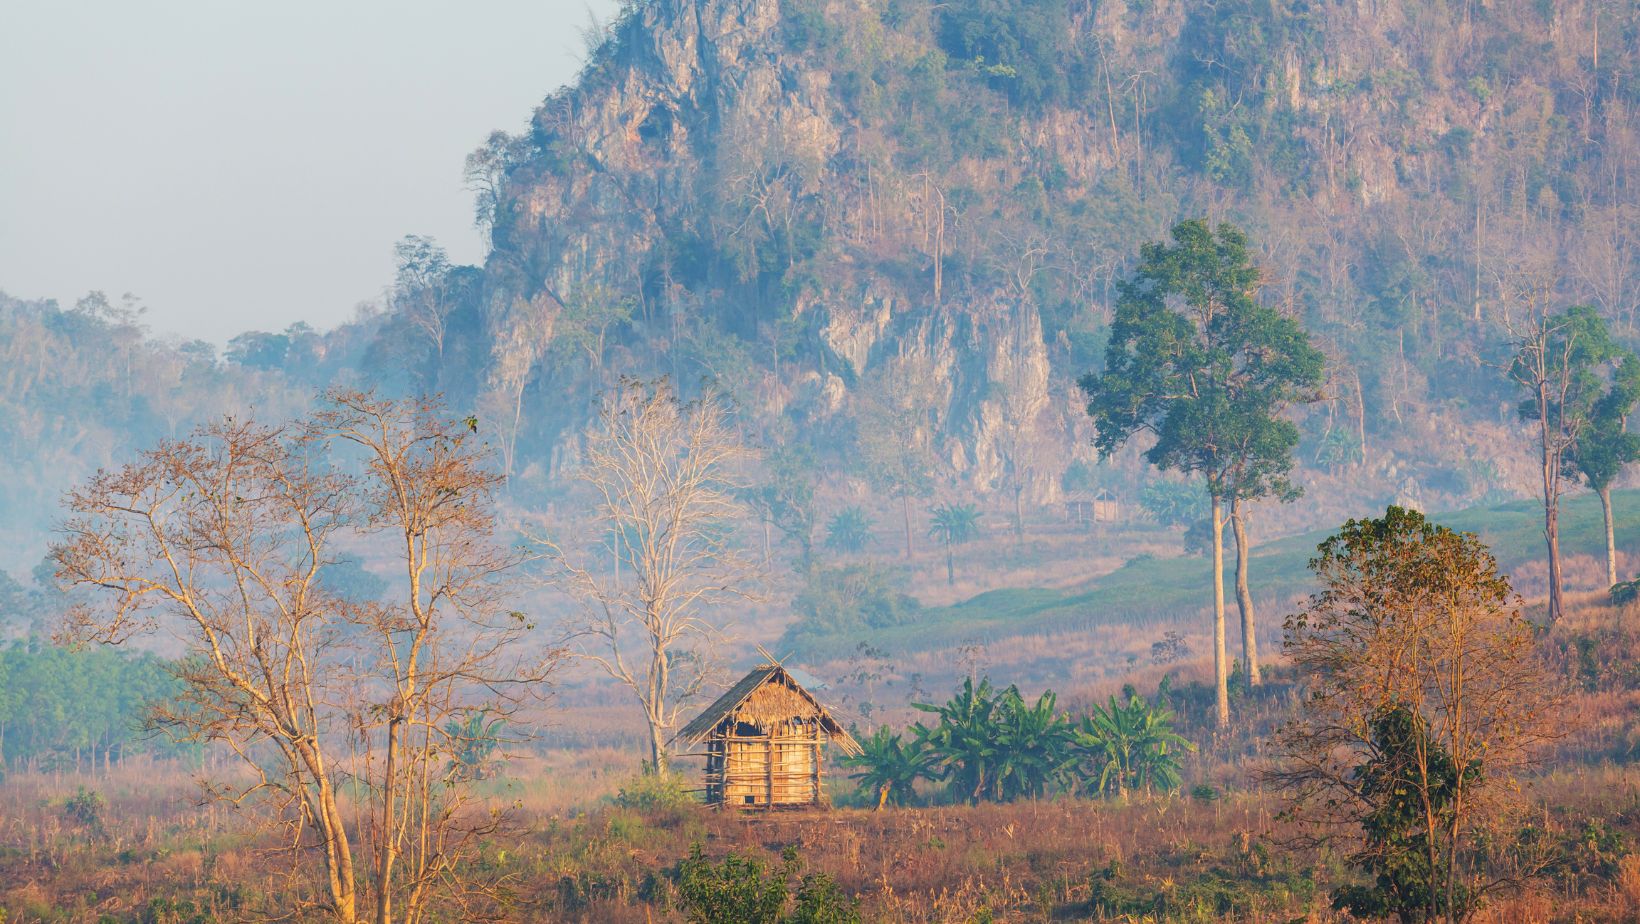 805lanna: The Historical Region in Northern Thailand